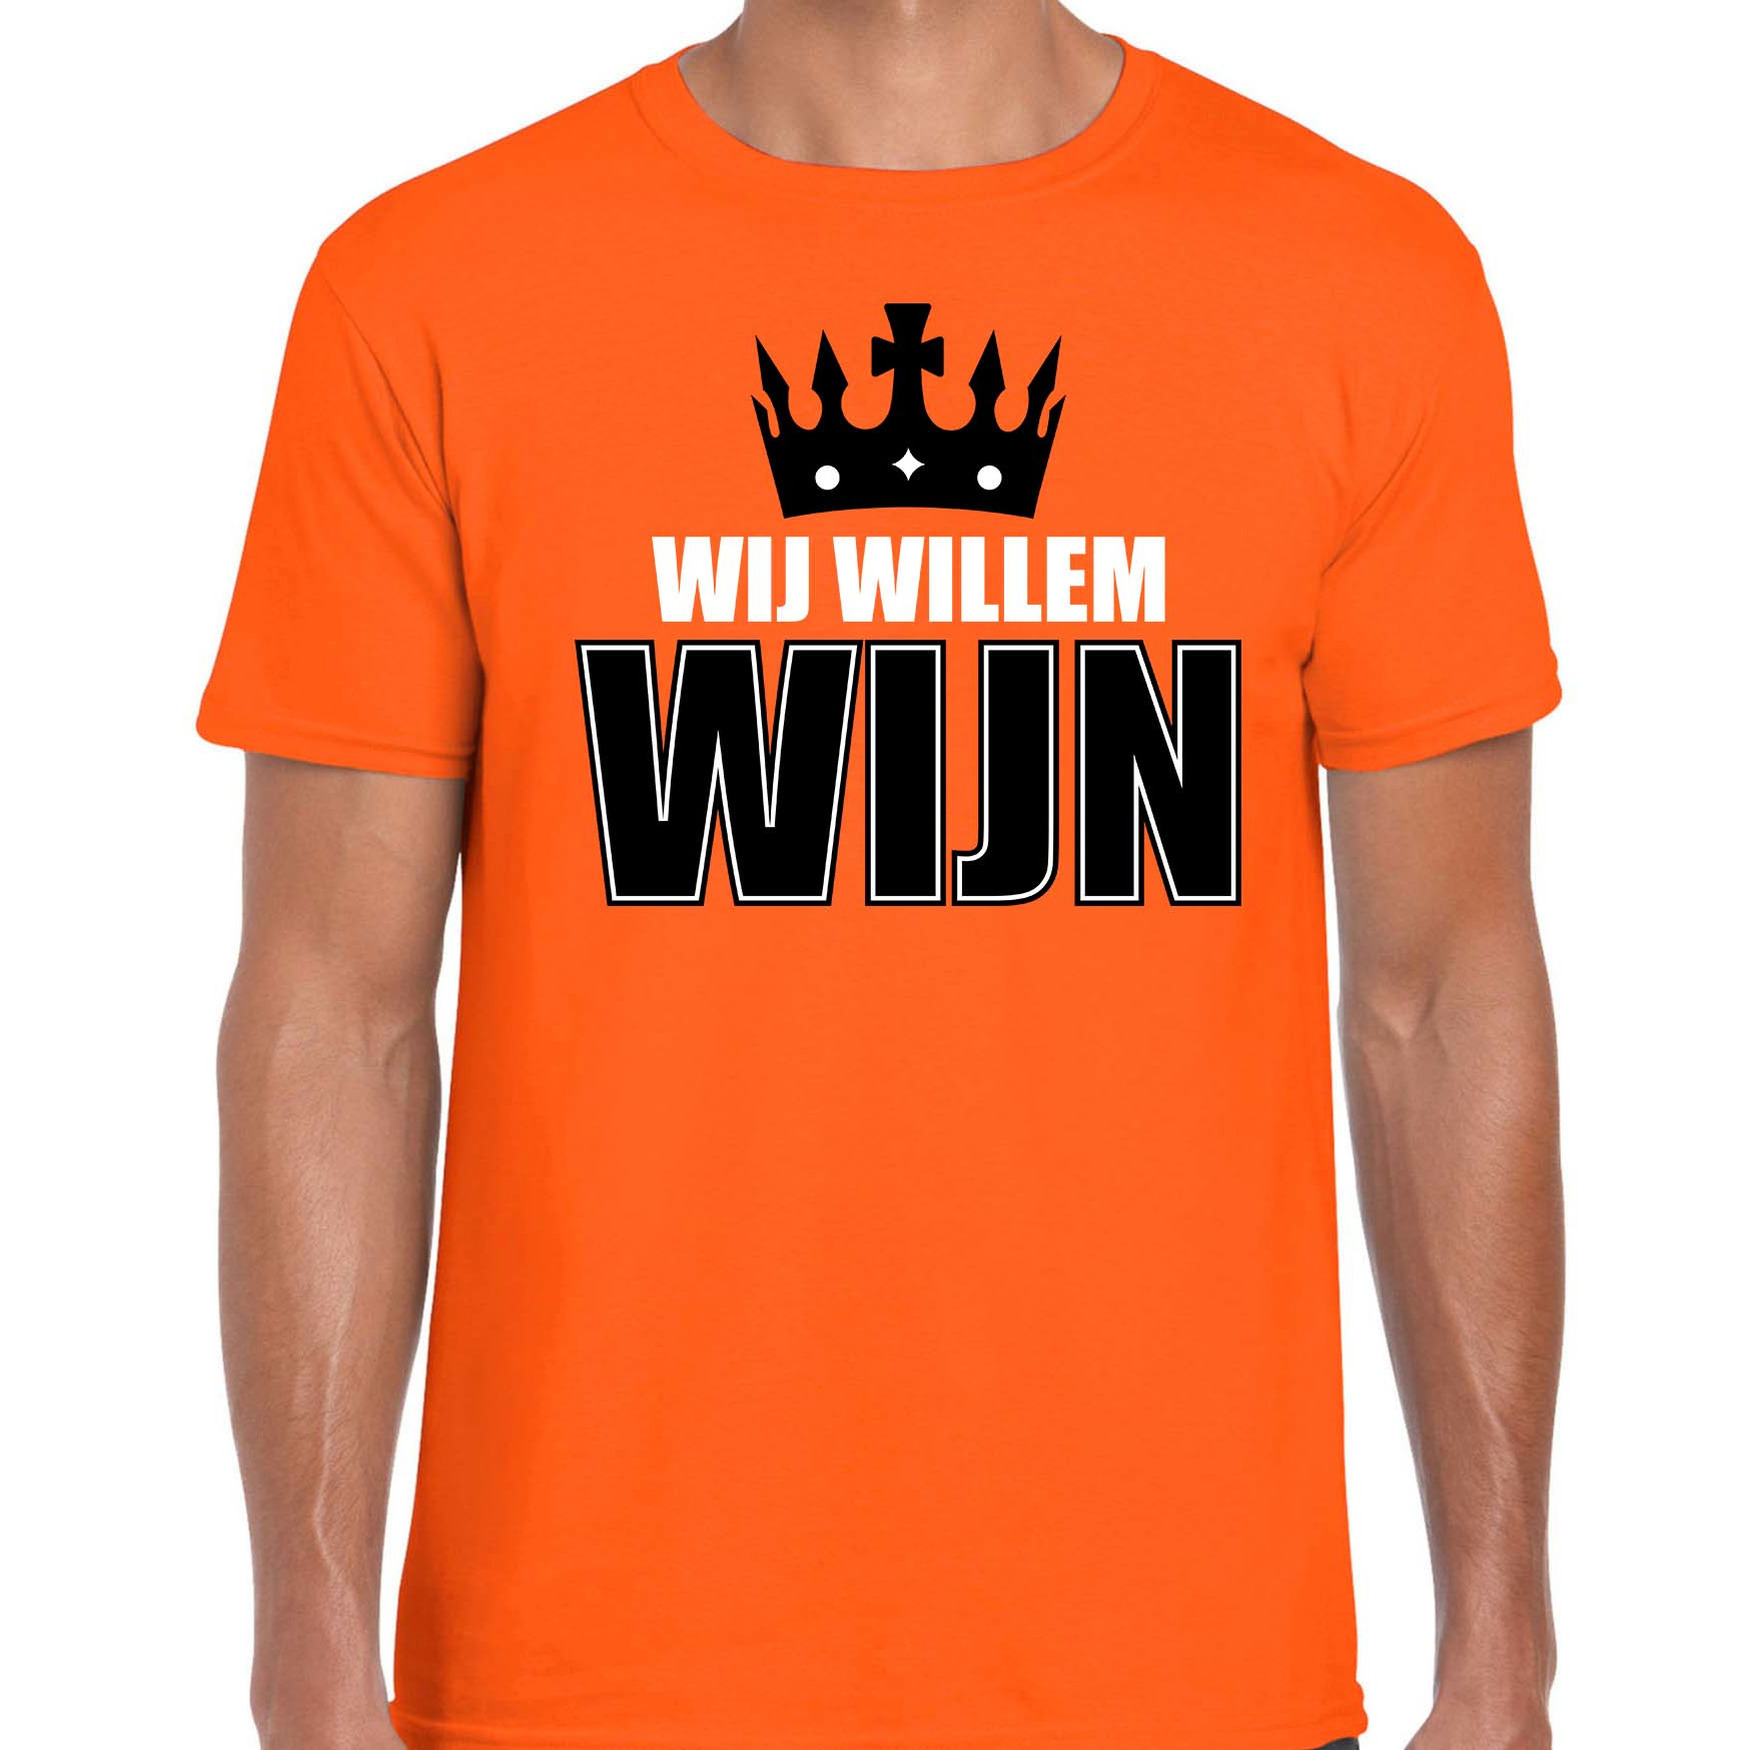 Wij Willem wijn t-shirt oranje voor heren Koningsdag shirts